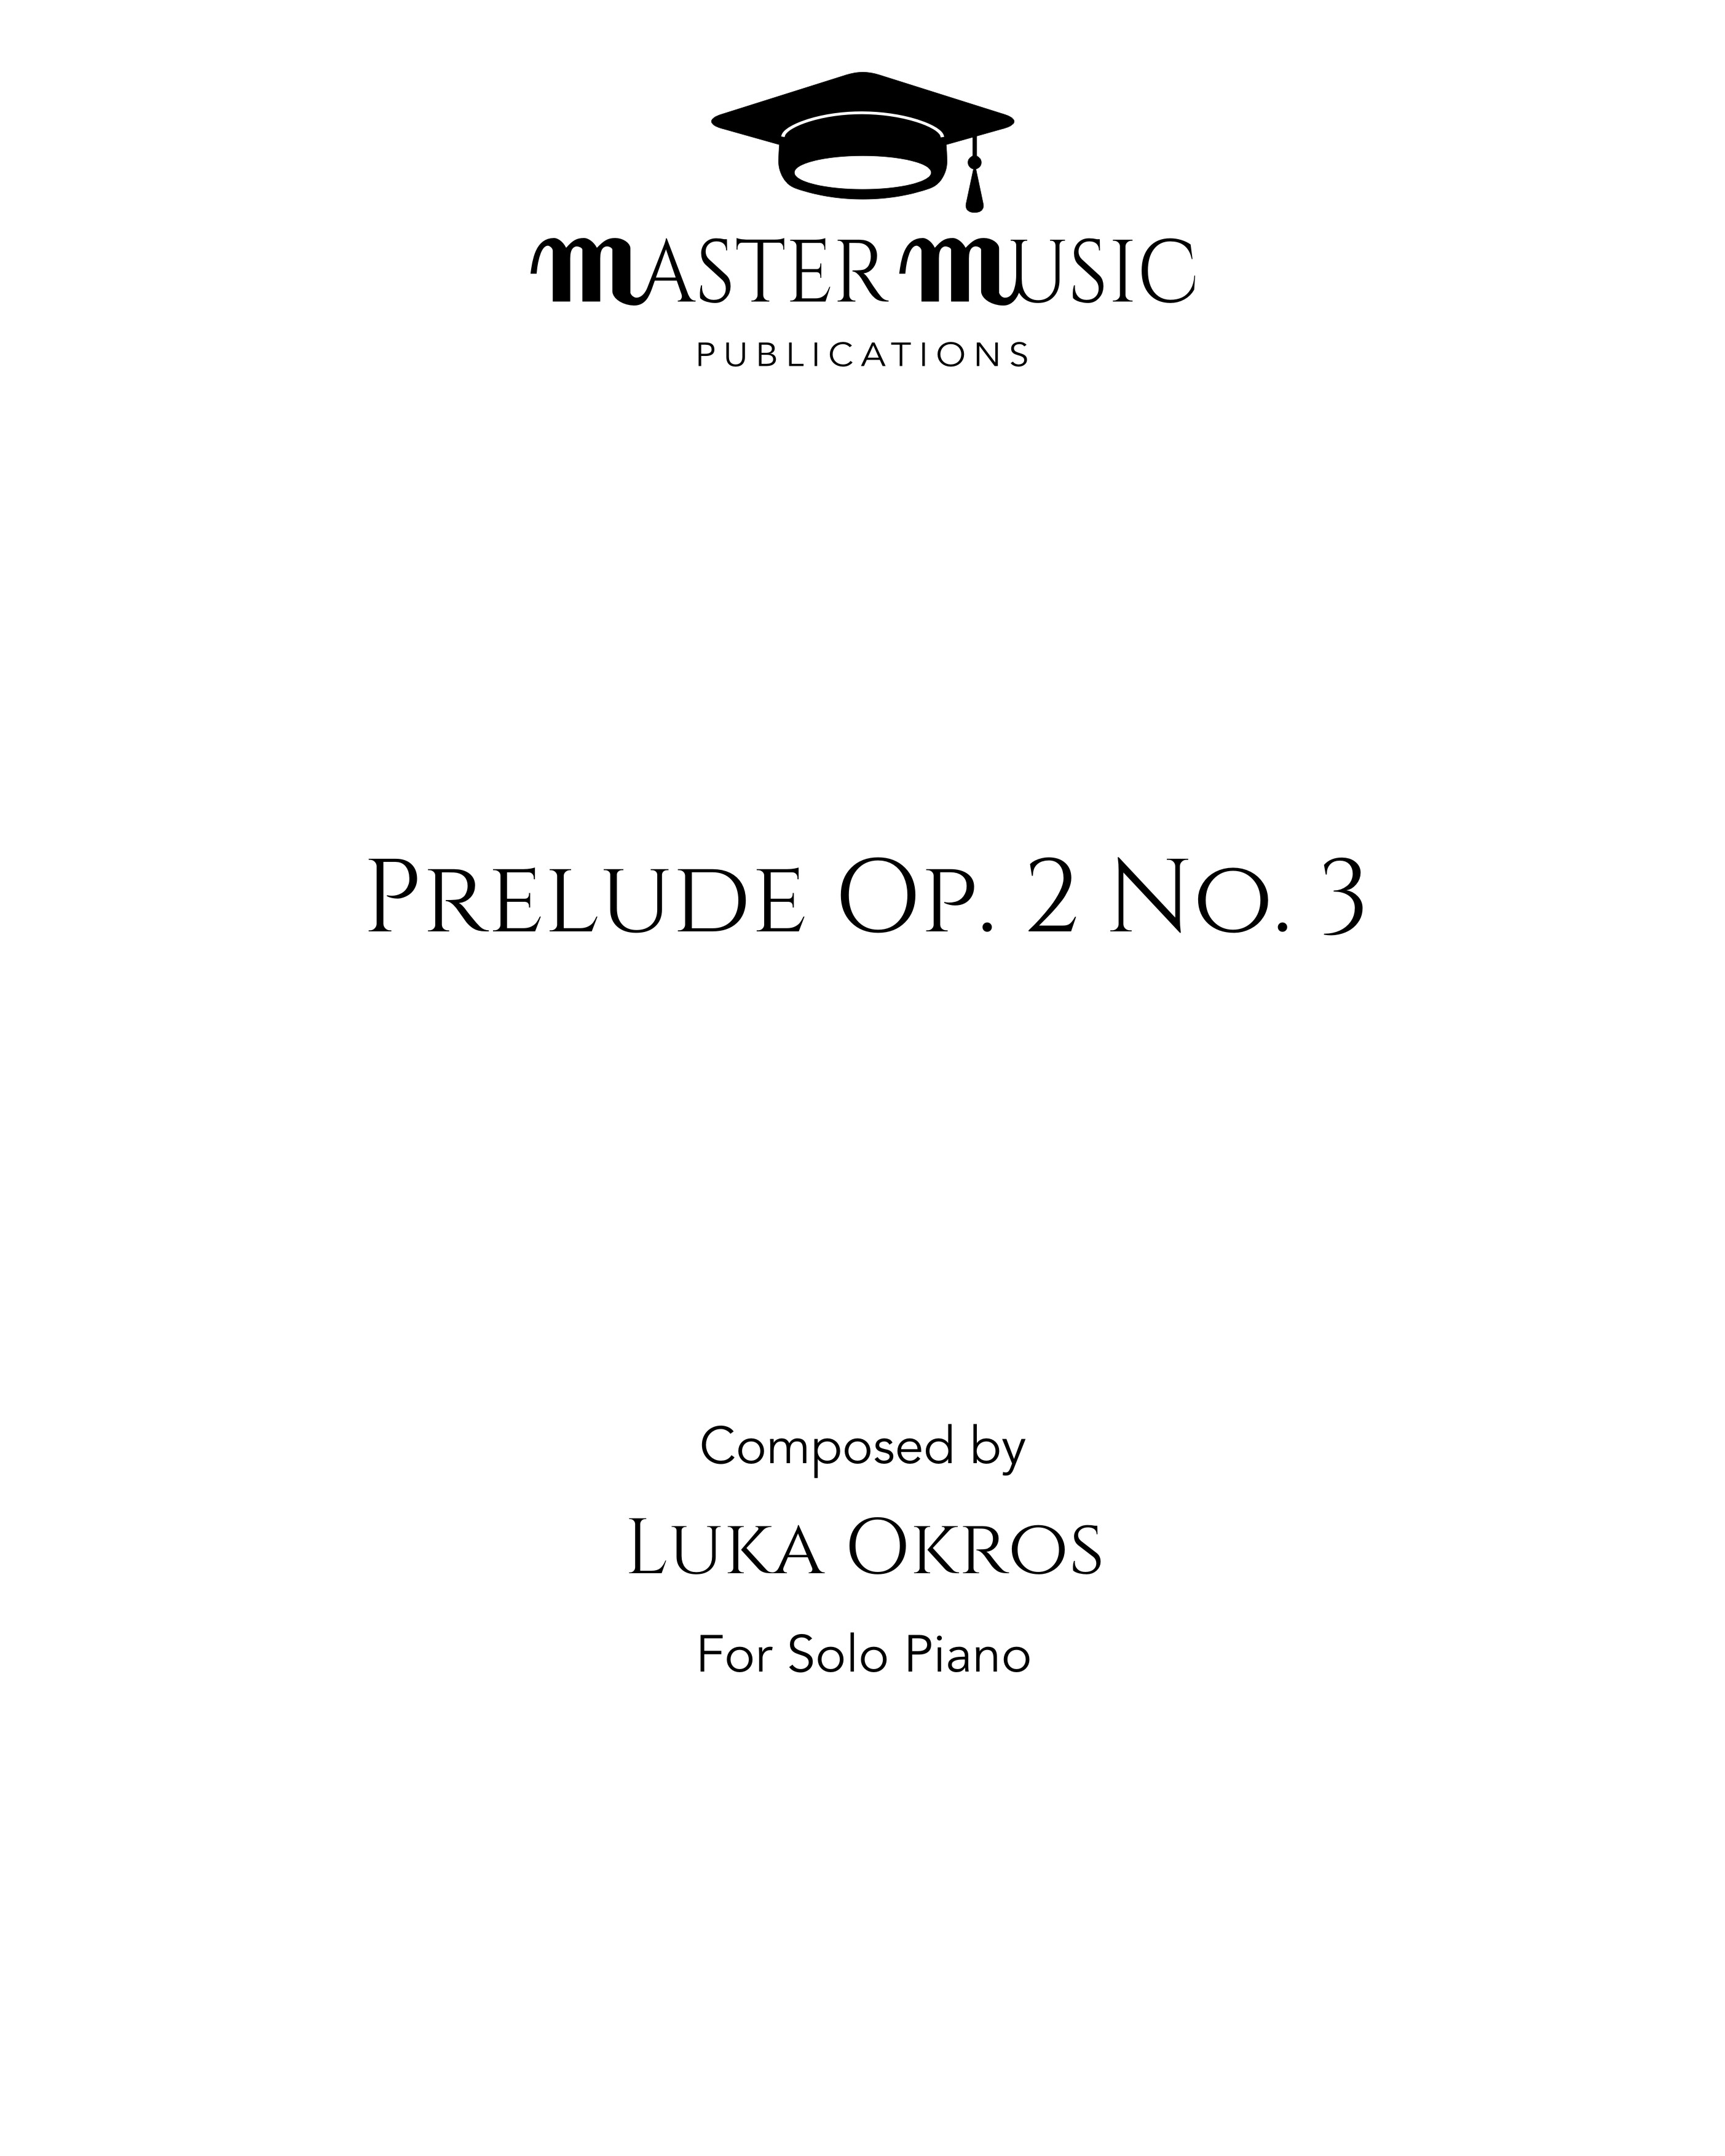 Prelude Op. 2 No. 3